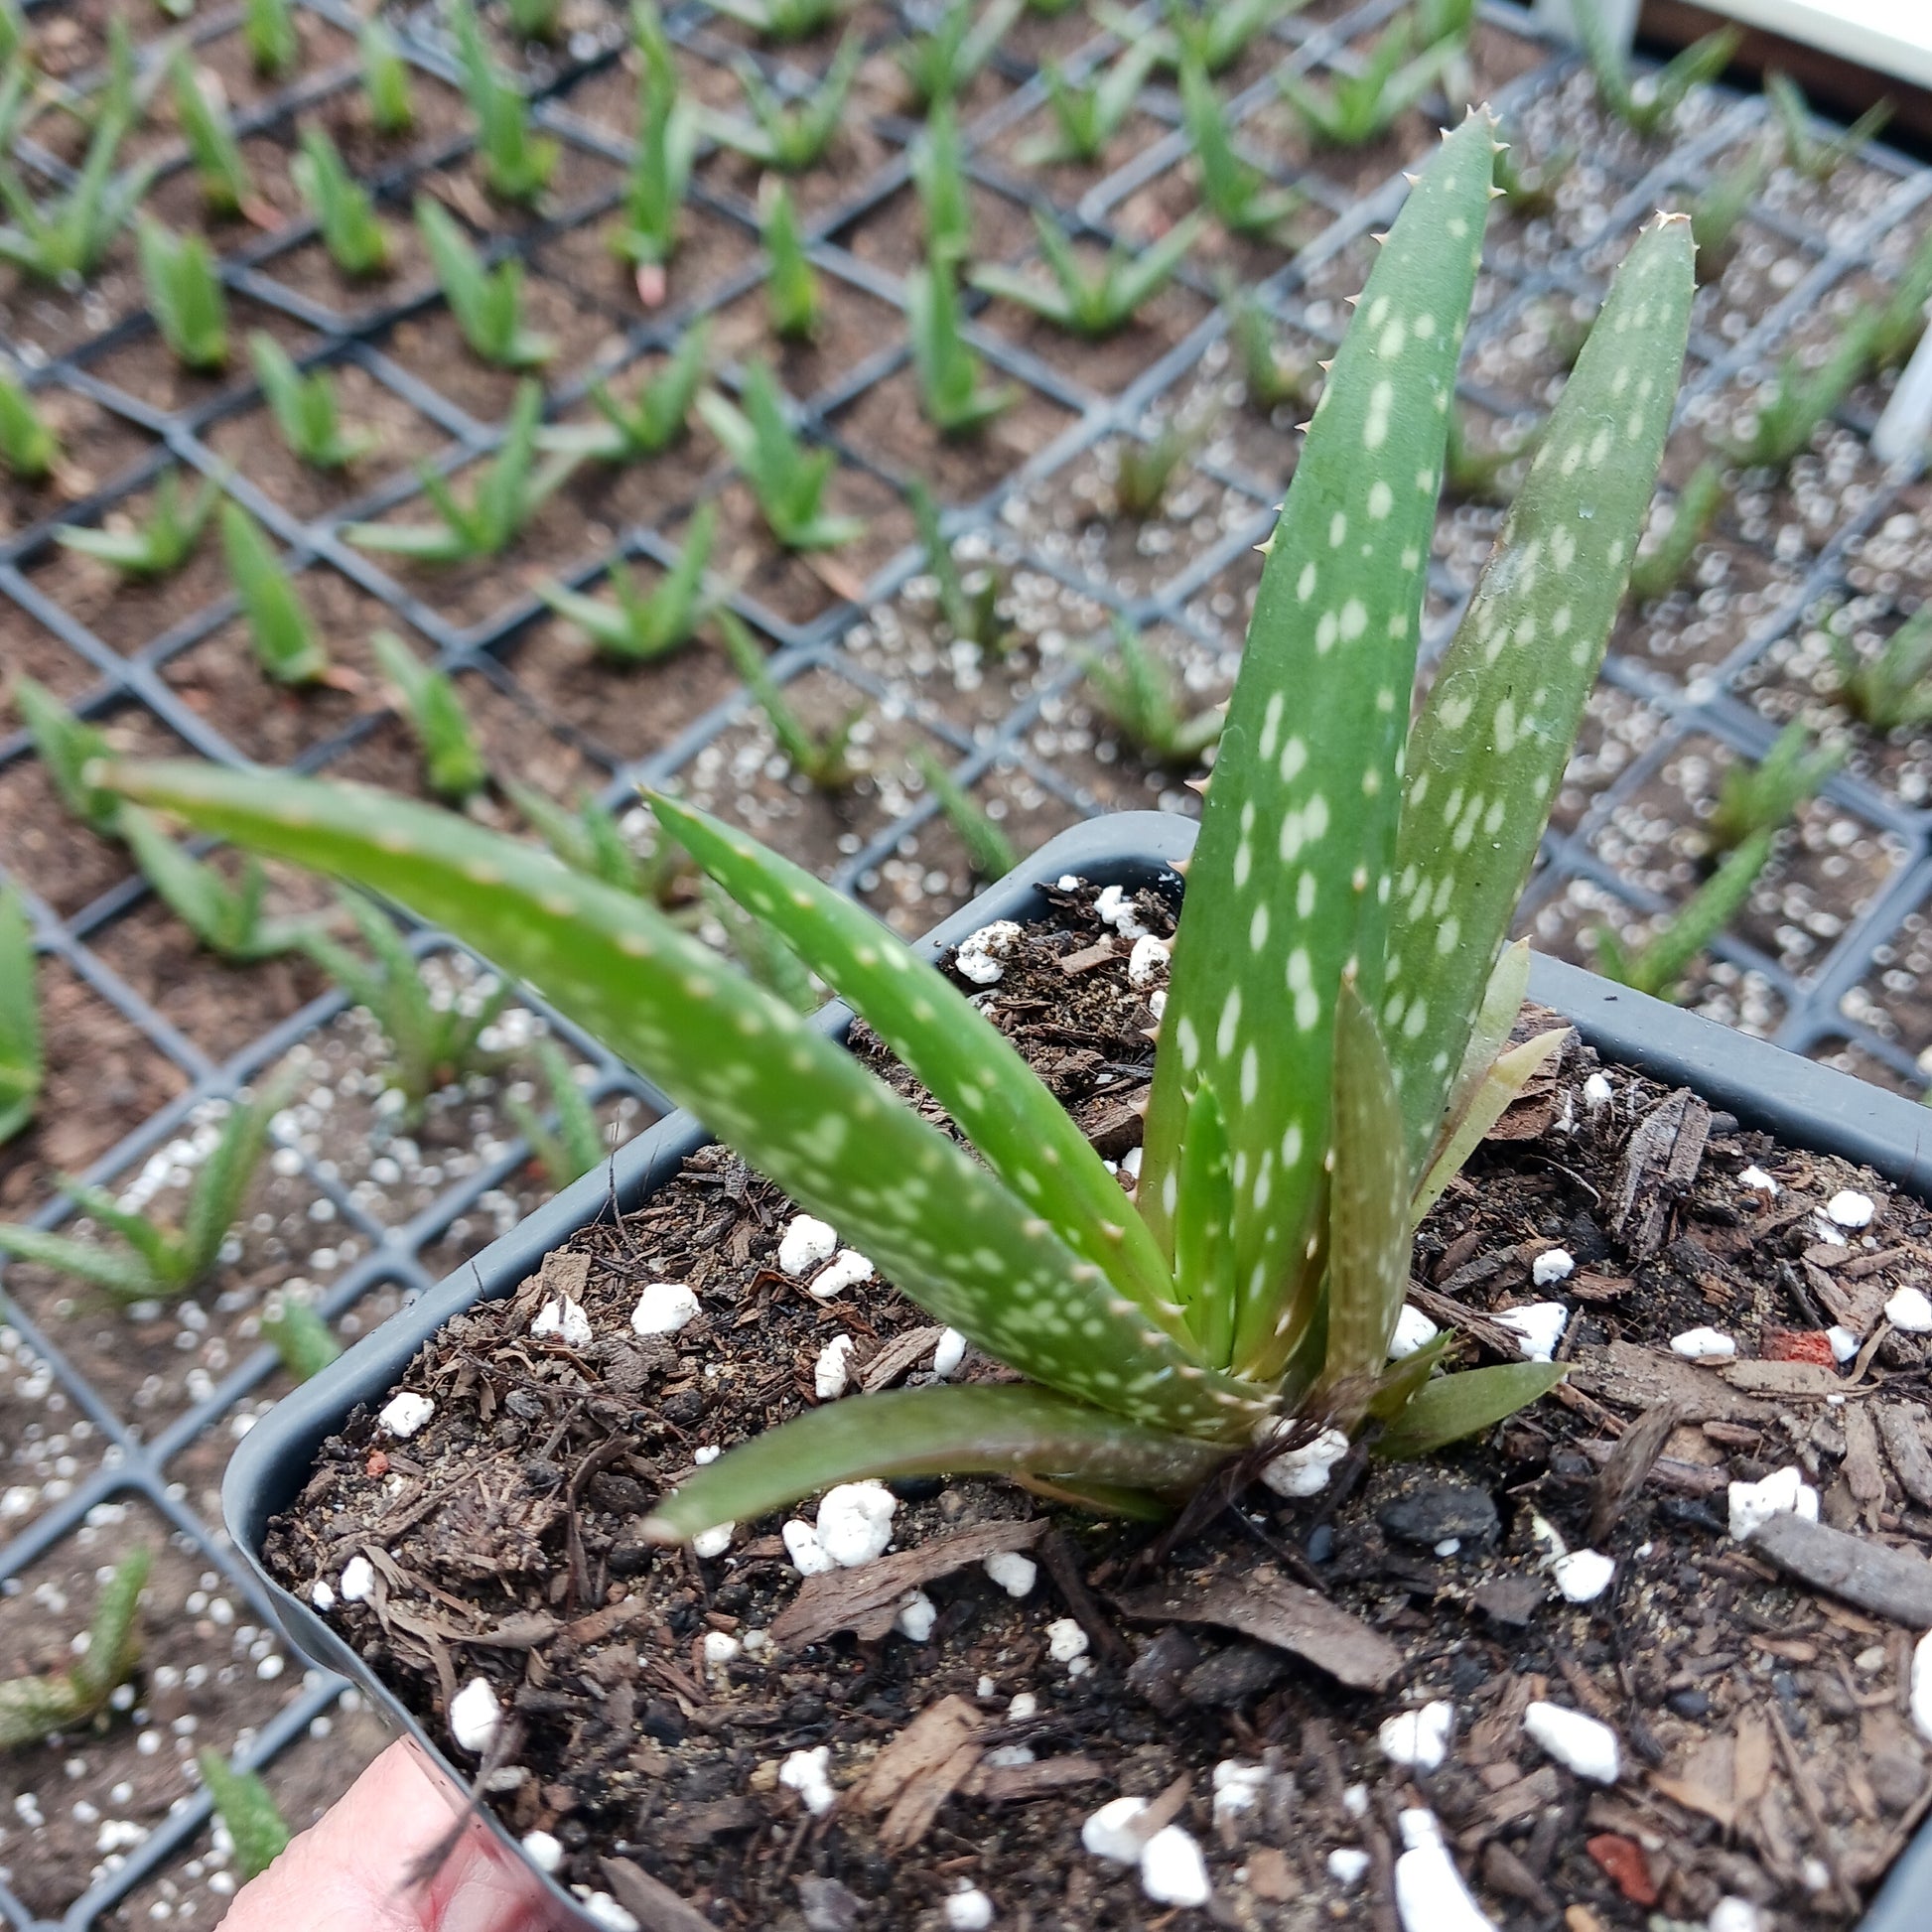 Aloe rooikappie